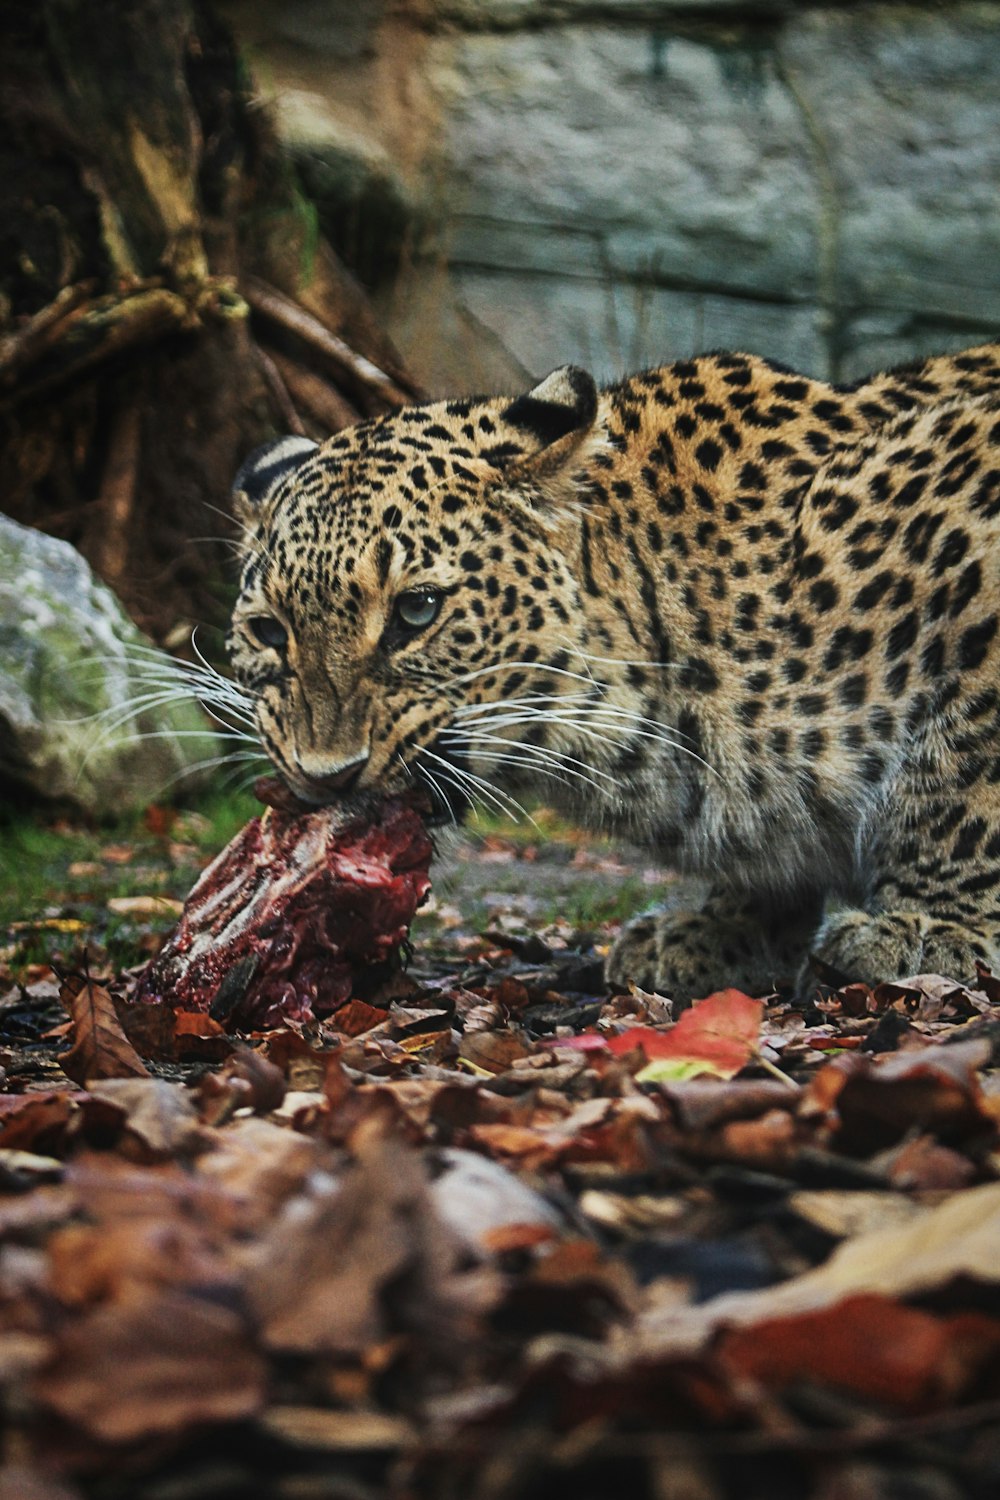 léopard mangeant de la viande crue